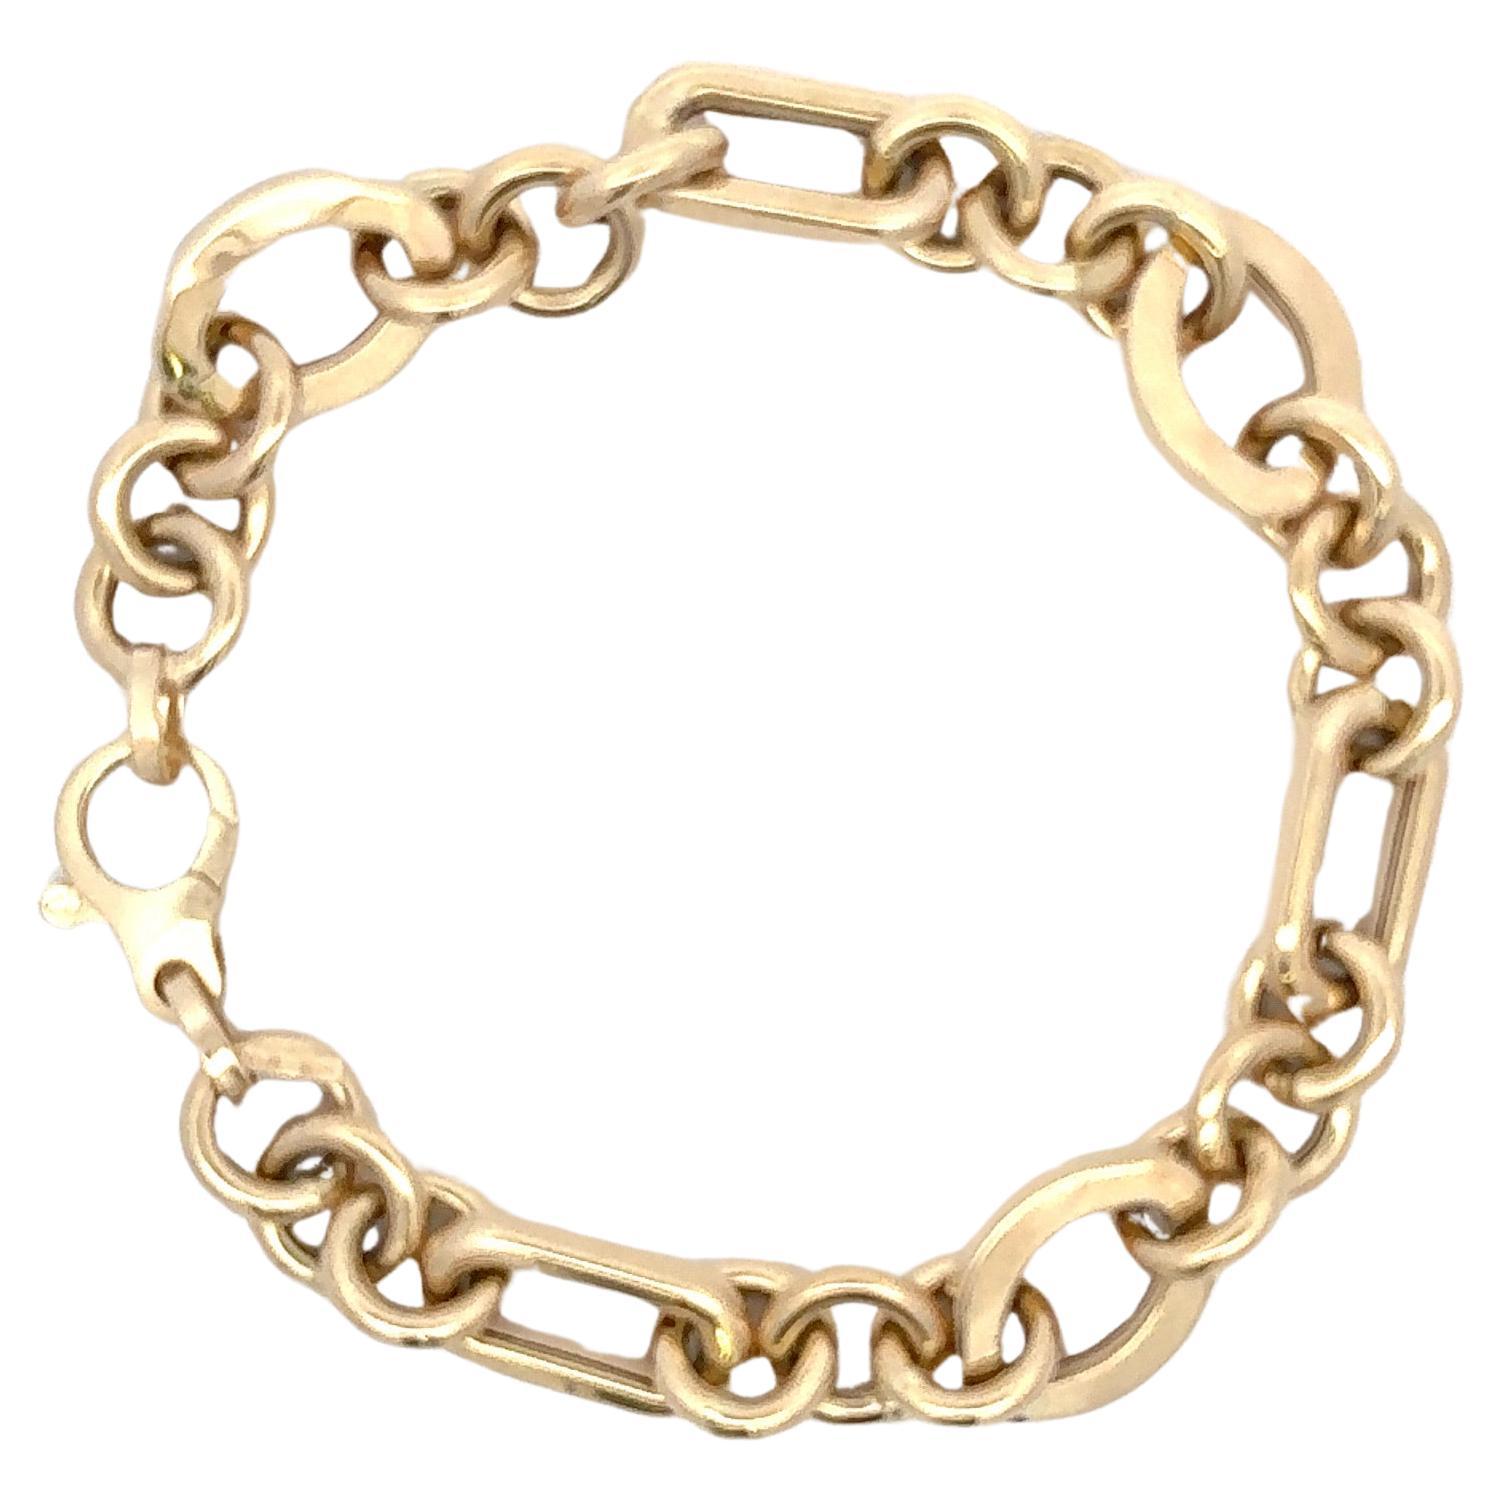 Fabriqué en Italie, ce bracelet en or jaune 14 carats présente trois maillons différents - rond, ovale et en forme de trombone - pour un poids de 9,7 grammes.